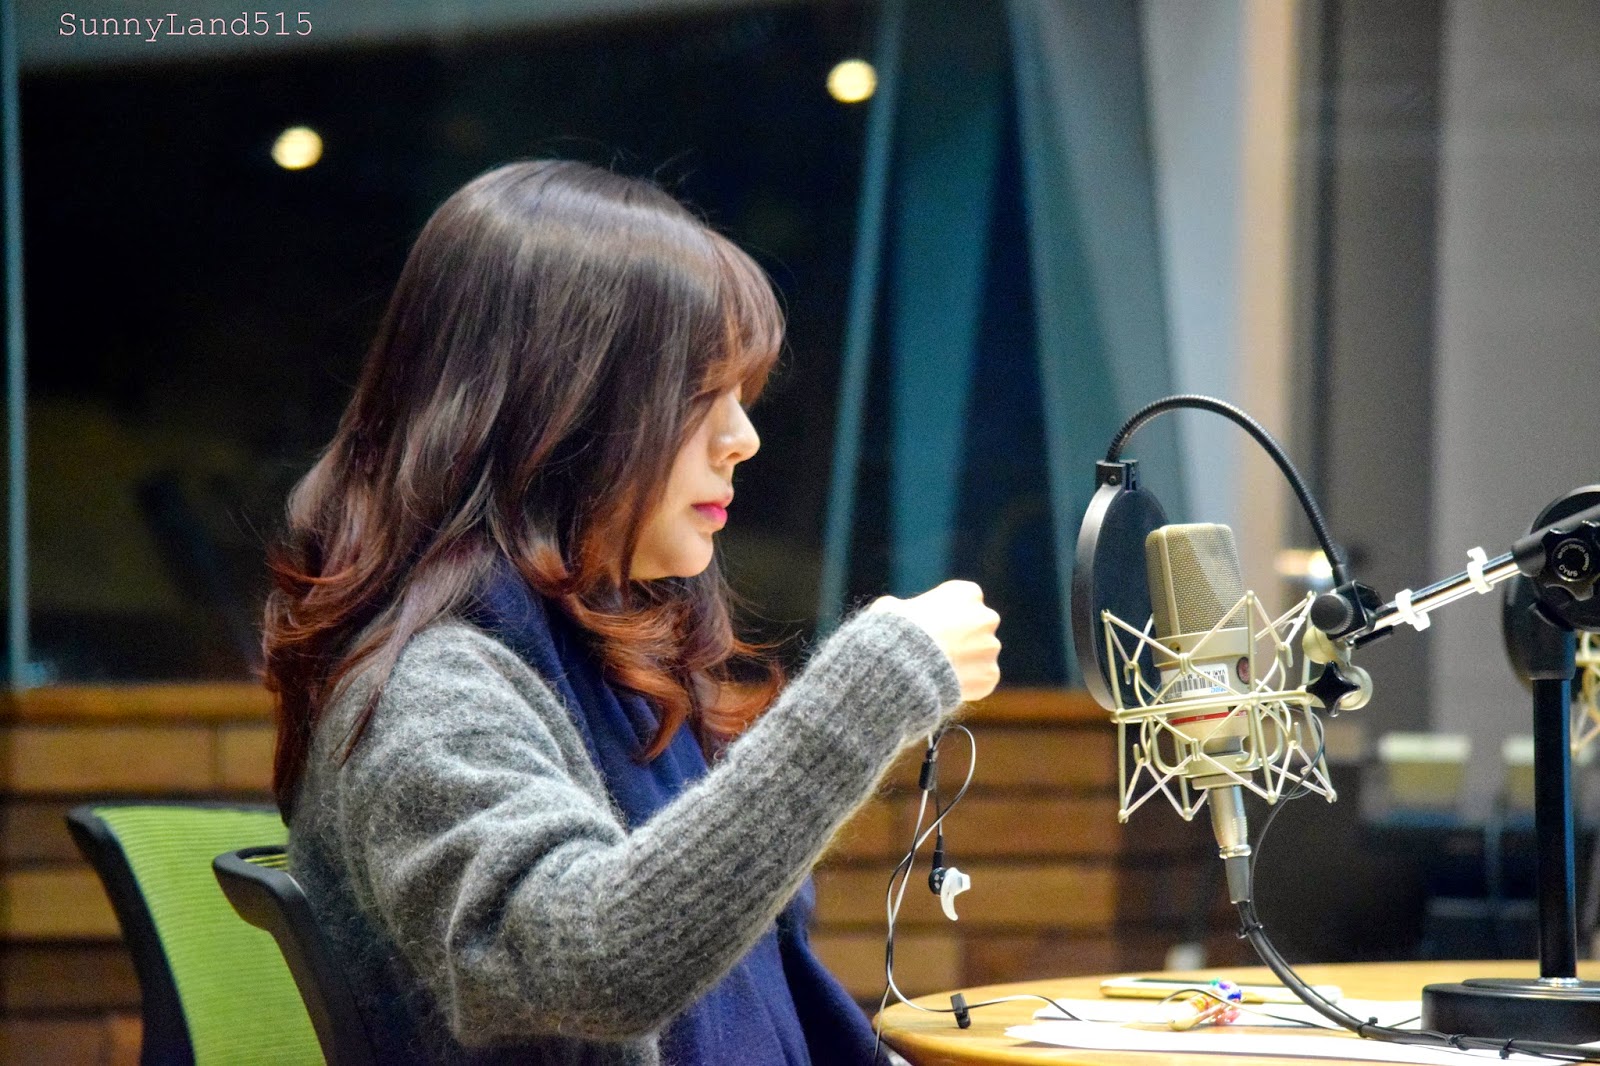 [OTHER][06-02-2015]Hình ảnh mới nhất từ DJ Sunny tại Radio MBC FM4U - "FM Date" - Page 10 DSC_0185_Fotor